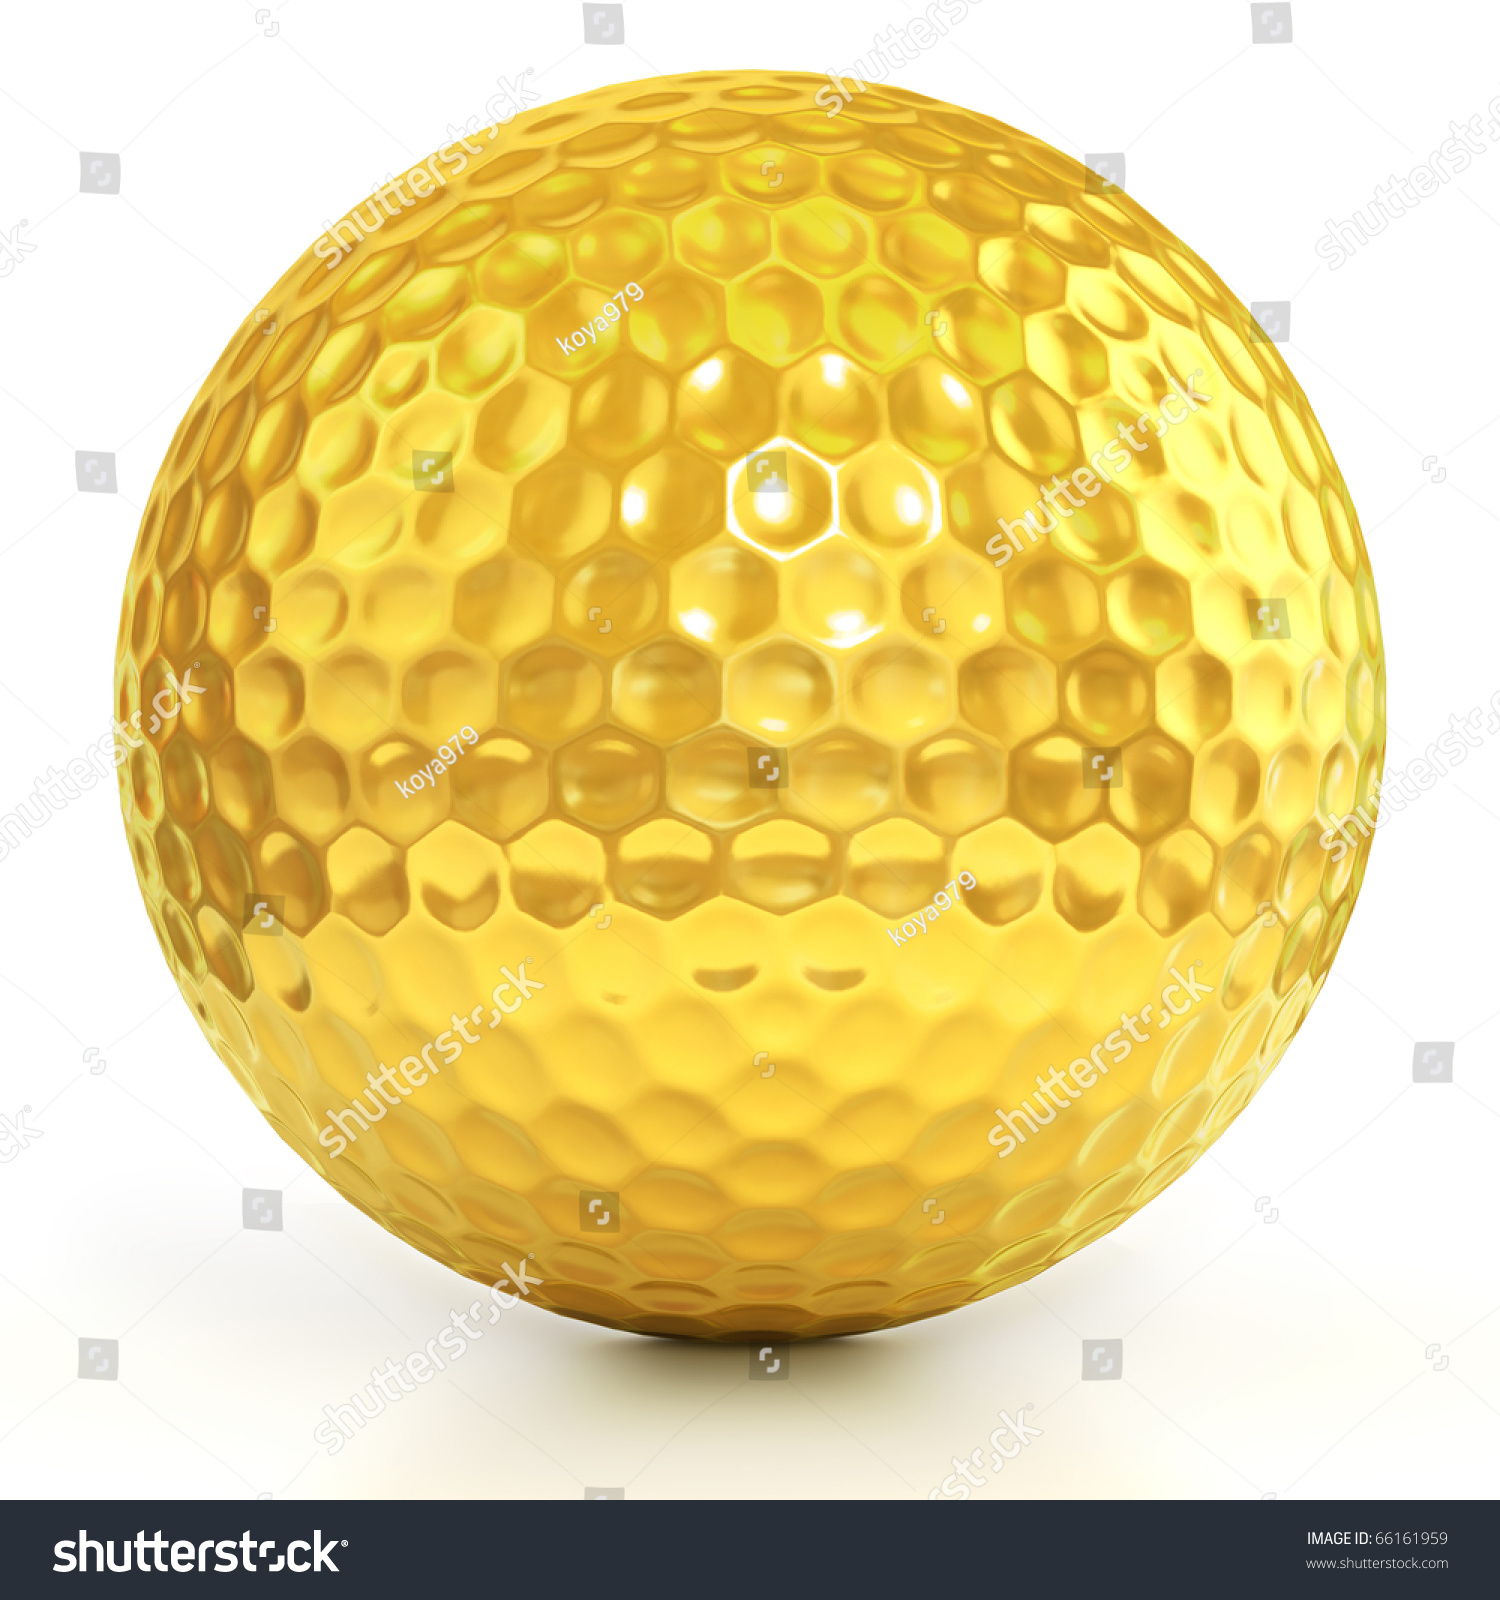 Golden Golf Ball Isolated Over White Stock Illustration 66161959 ...